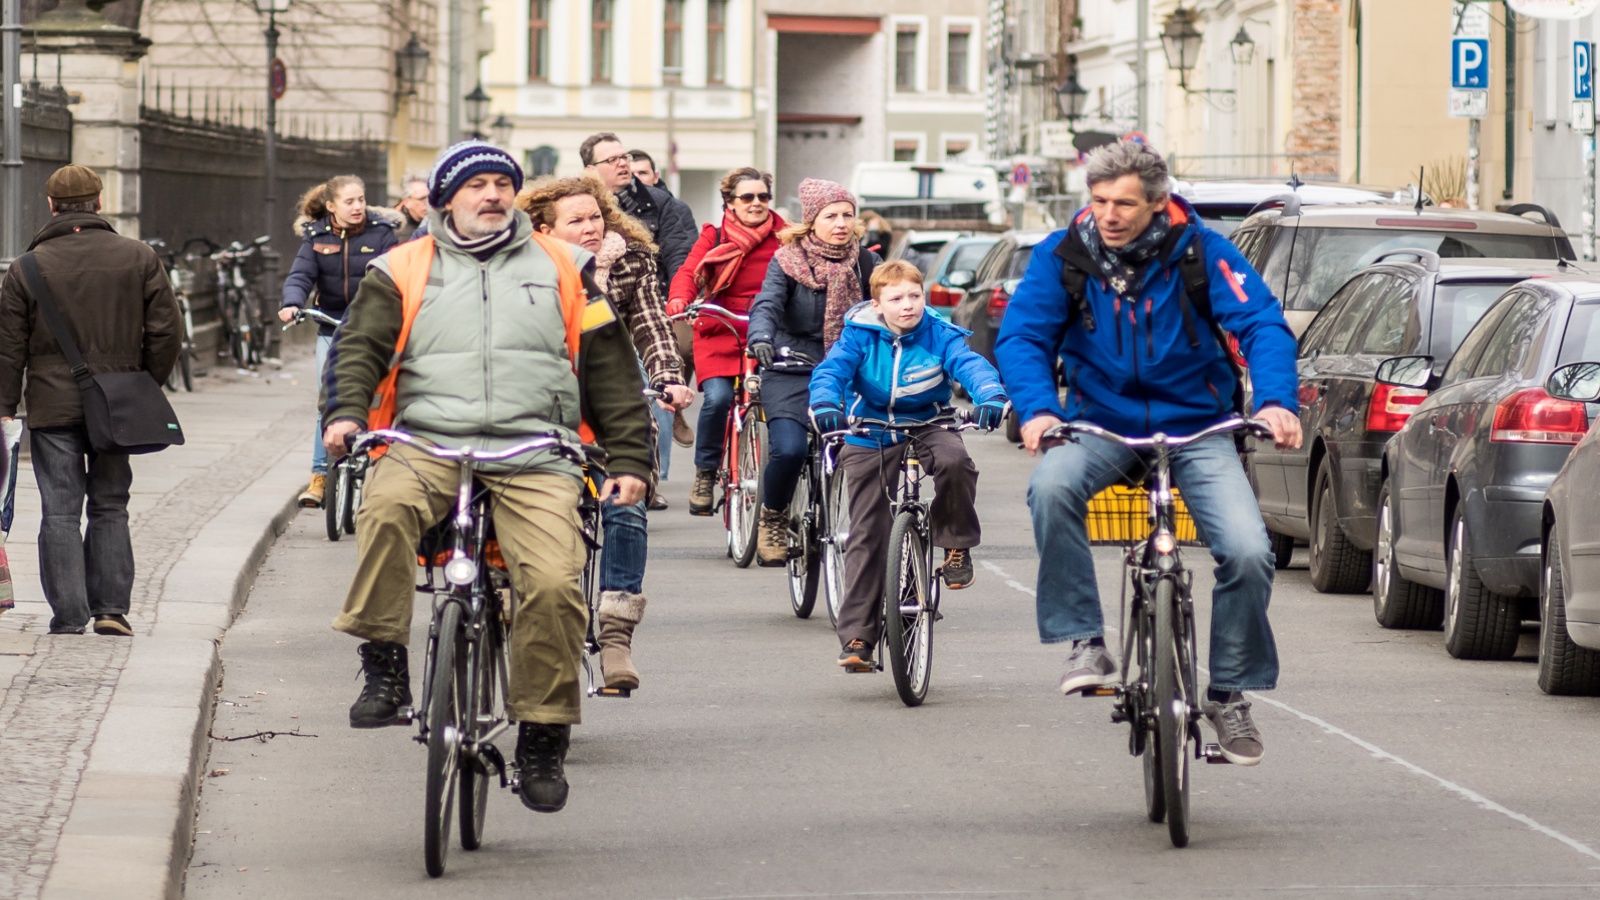 ازدياد استخدام الدراجات الهوائية بفعل الوباء يعقّد الحركة المرورية في برلين